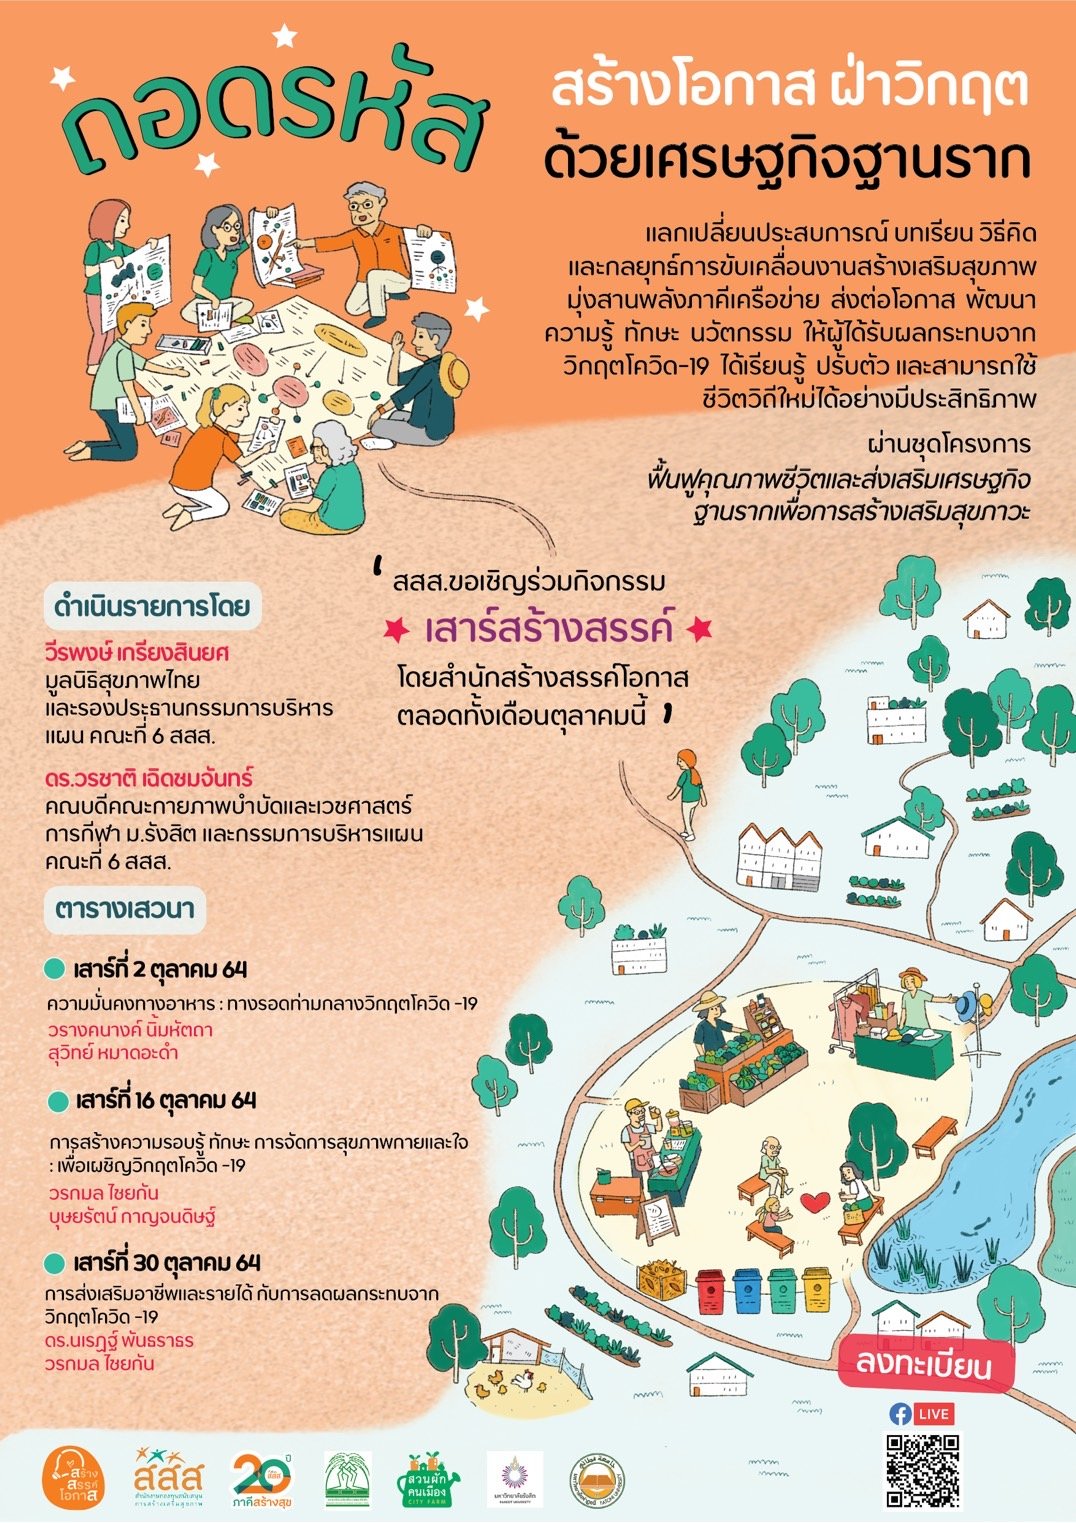 สสส.-ภาคีเครือข่าย  ผุดกิจกรรม เสาร์สร้างสรรค์ พัฒนาทักษะฝึกอาชีพ 3 ด้าน  ช่วยคนตกงานฝ่าวิกฤตโควิด-19 thaihealth